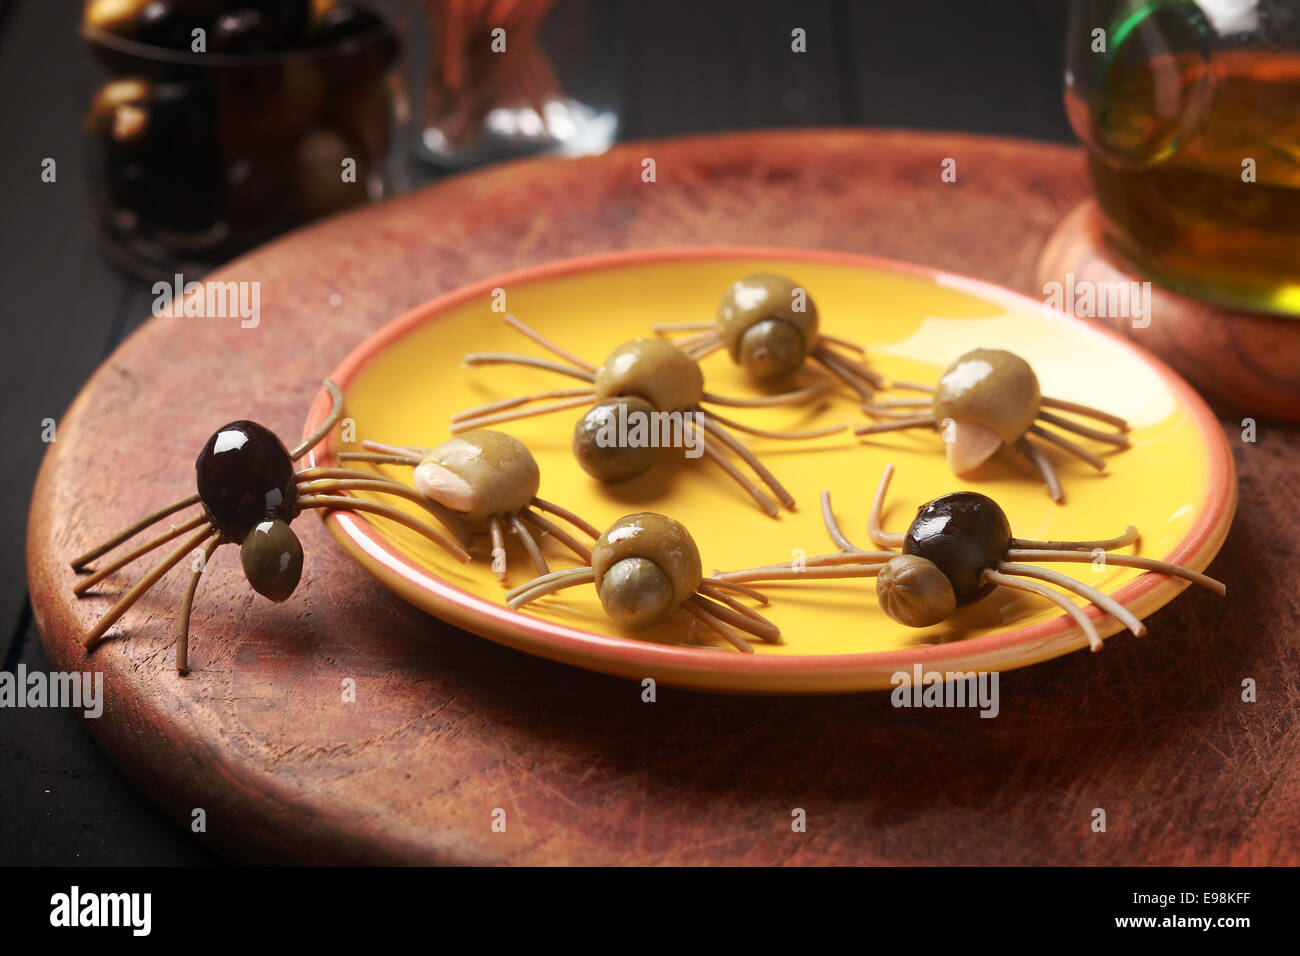 Crawly Creepy Halloween araignées comestibles fabriqués à partir de guéri olives vertes et noires avec jambes spaghetti italien sur une table à une fête d'Halloween pour les entrées ou de faveurs pour trick-ot-traiter Banque D'Images